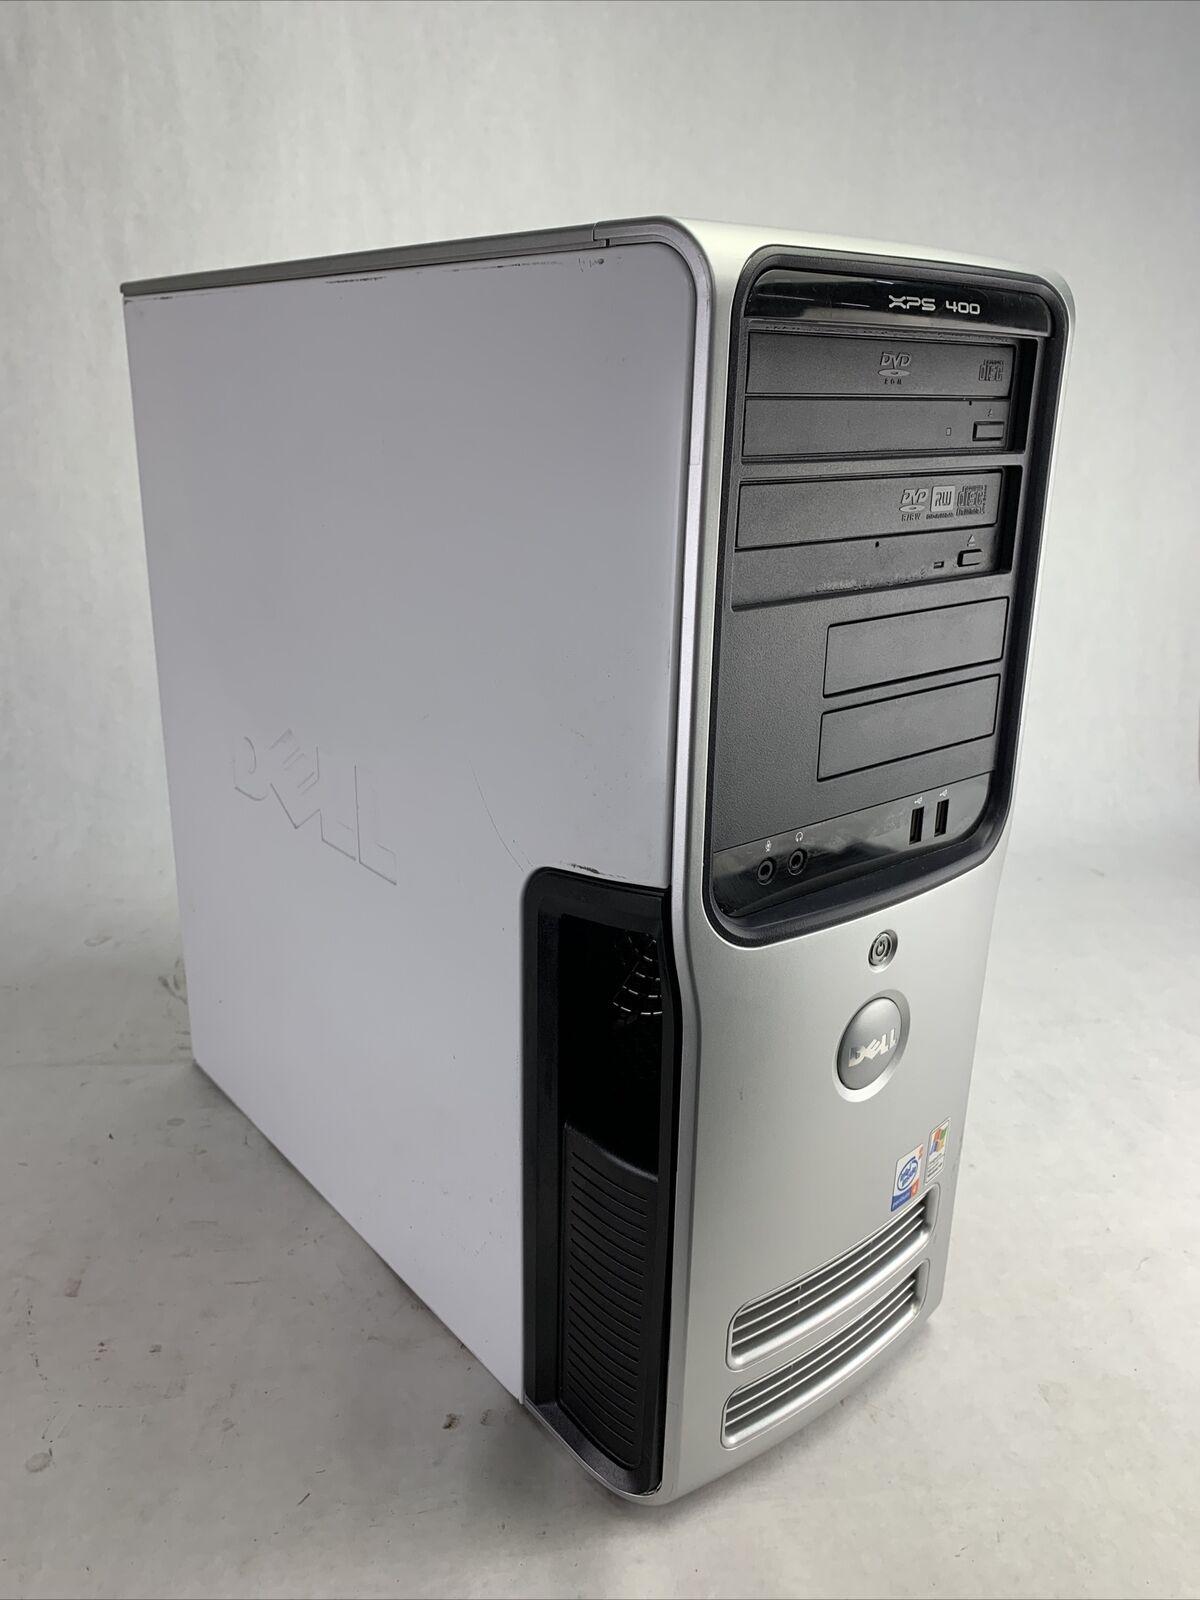 Dell XPS 400 MT Intel Pentium 4 3.2GHz 256BM RAM No HDD No OS